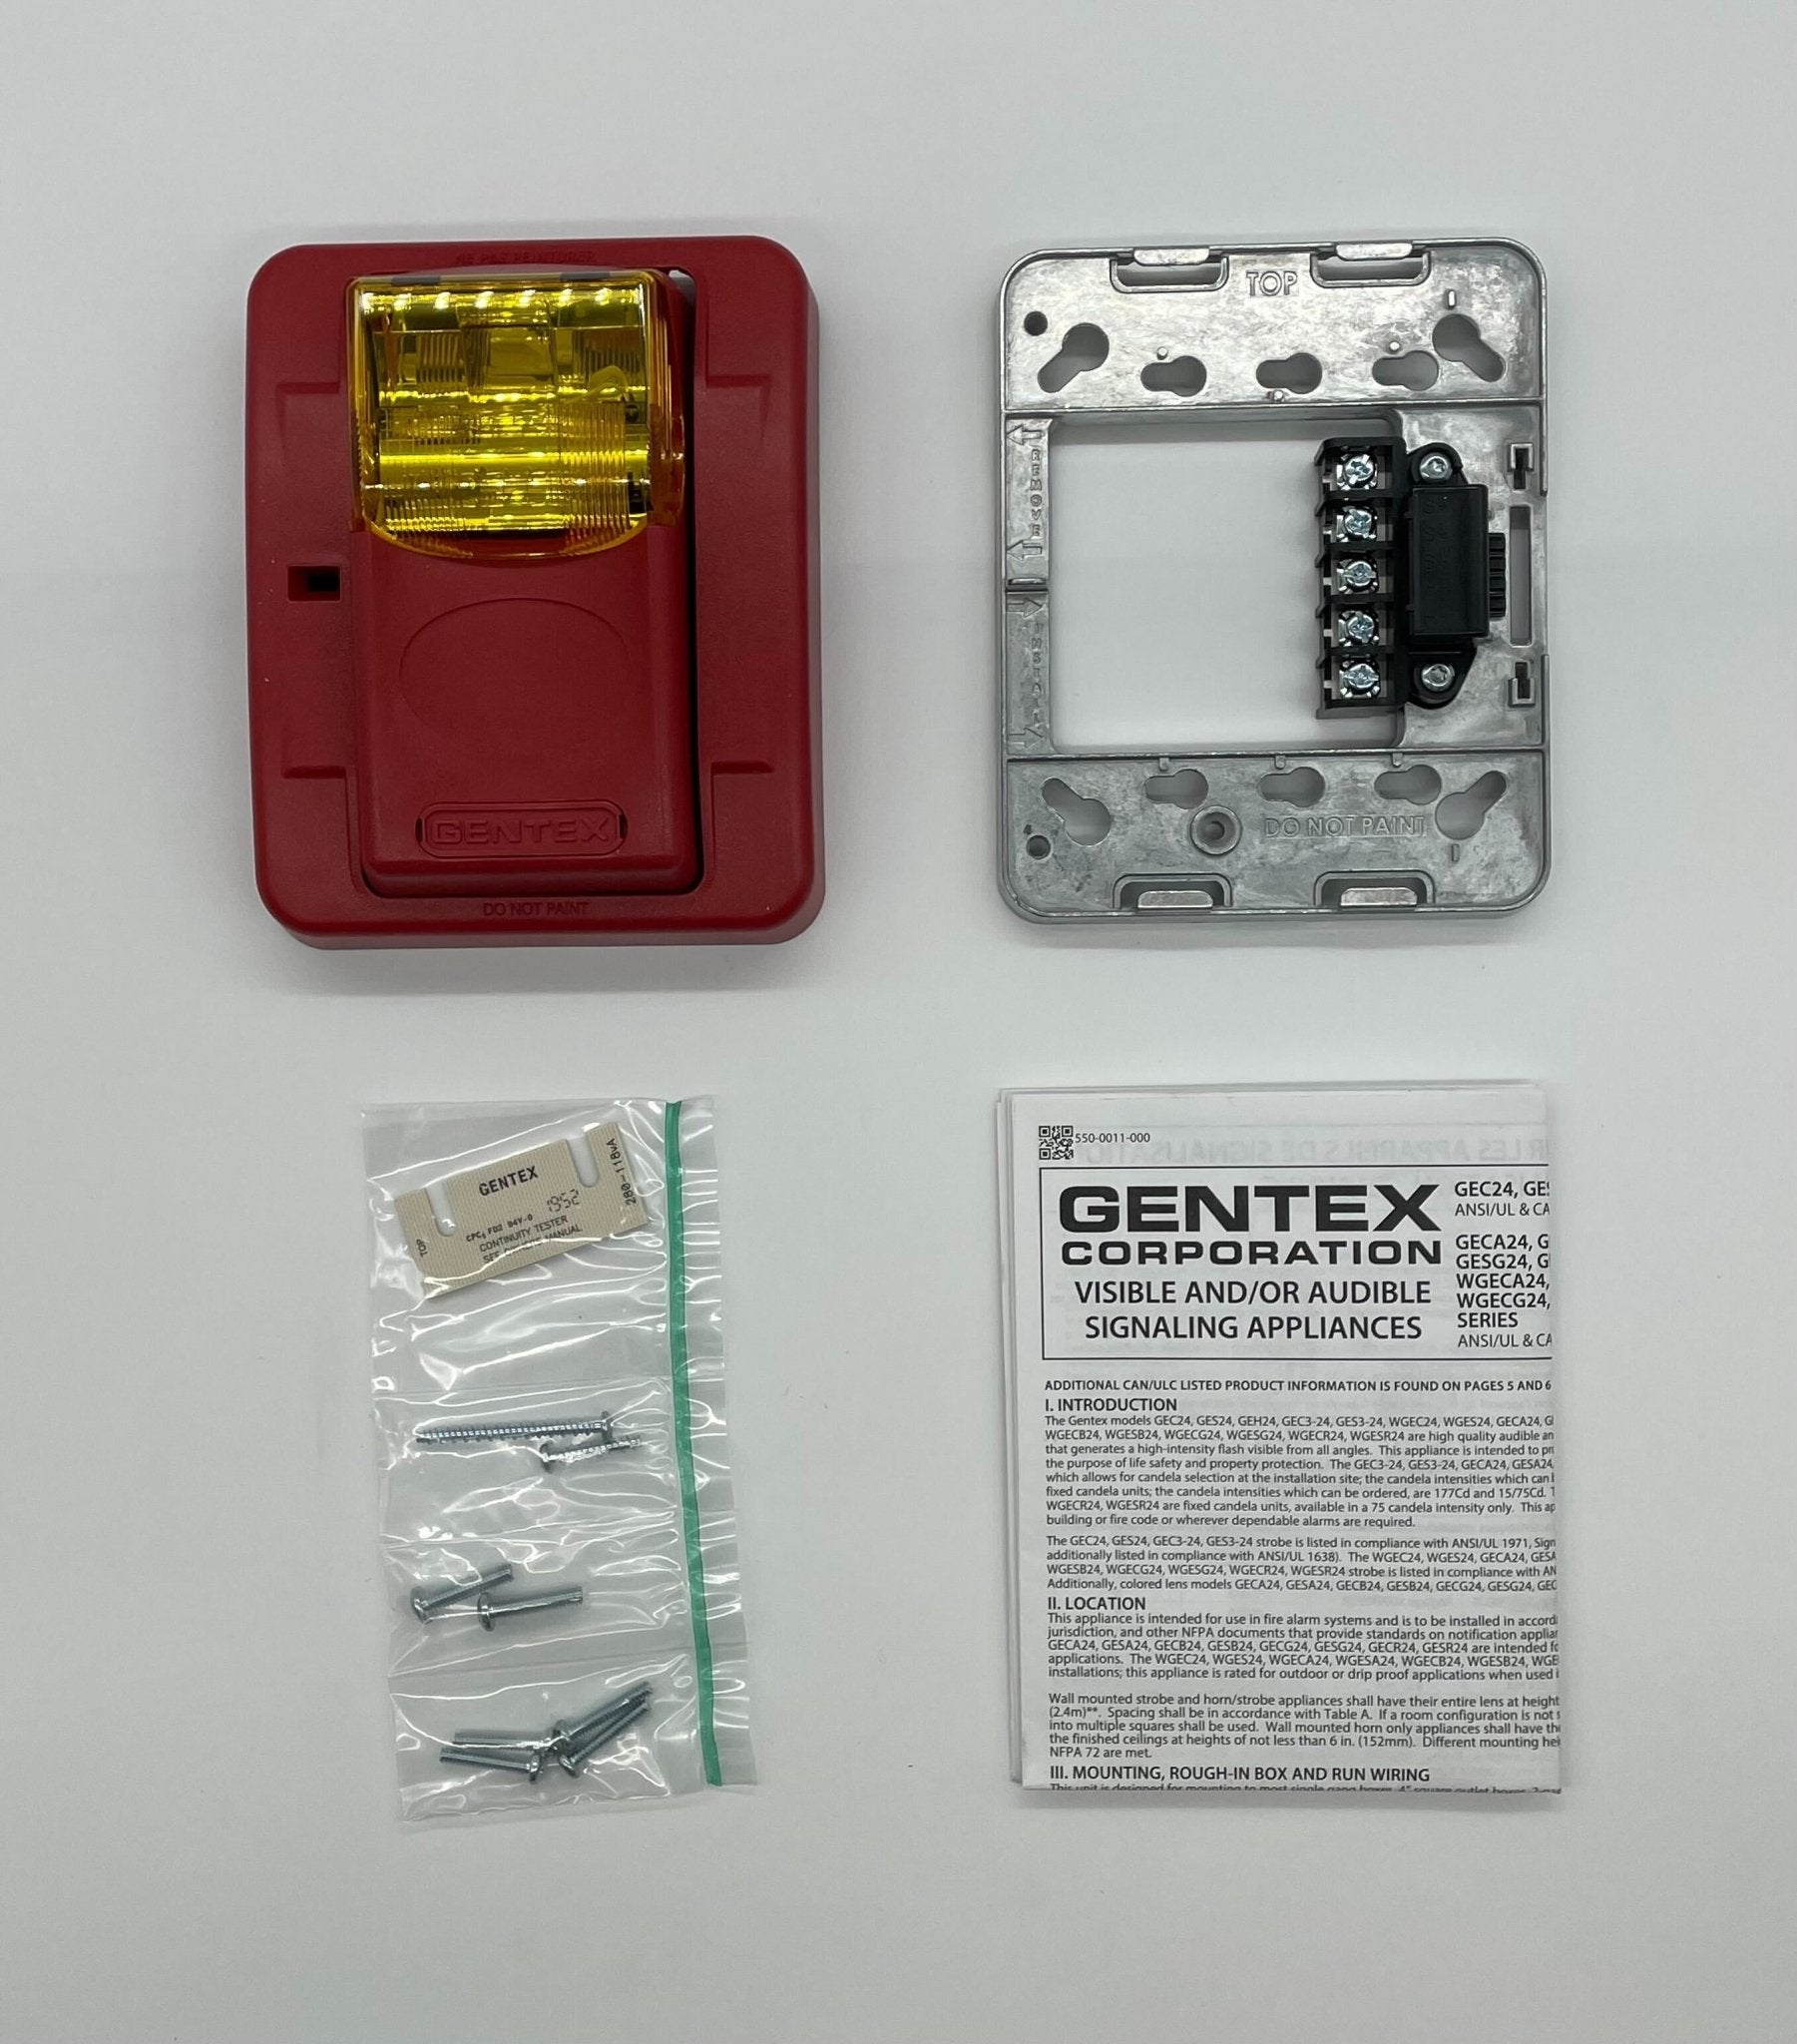 Gentex GESA24PWR - The Fire Alarm Supplier